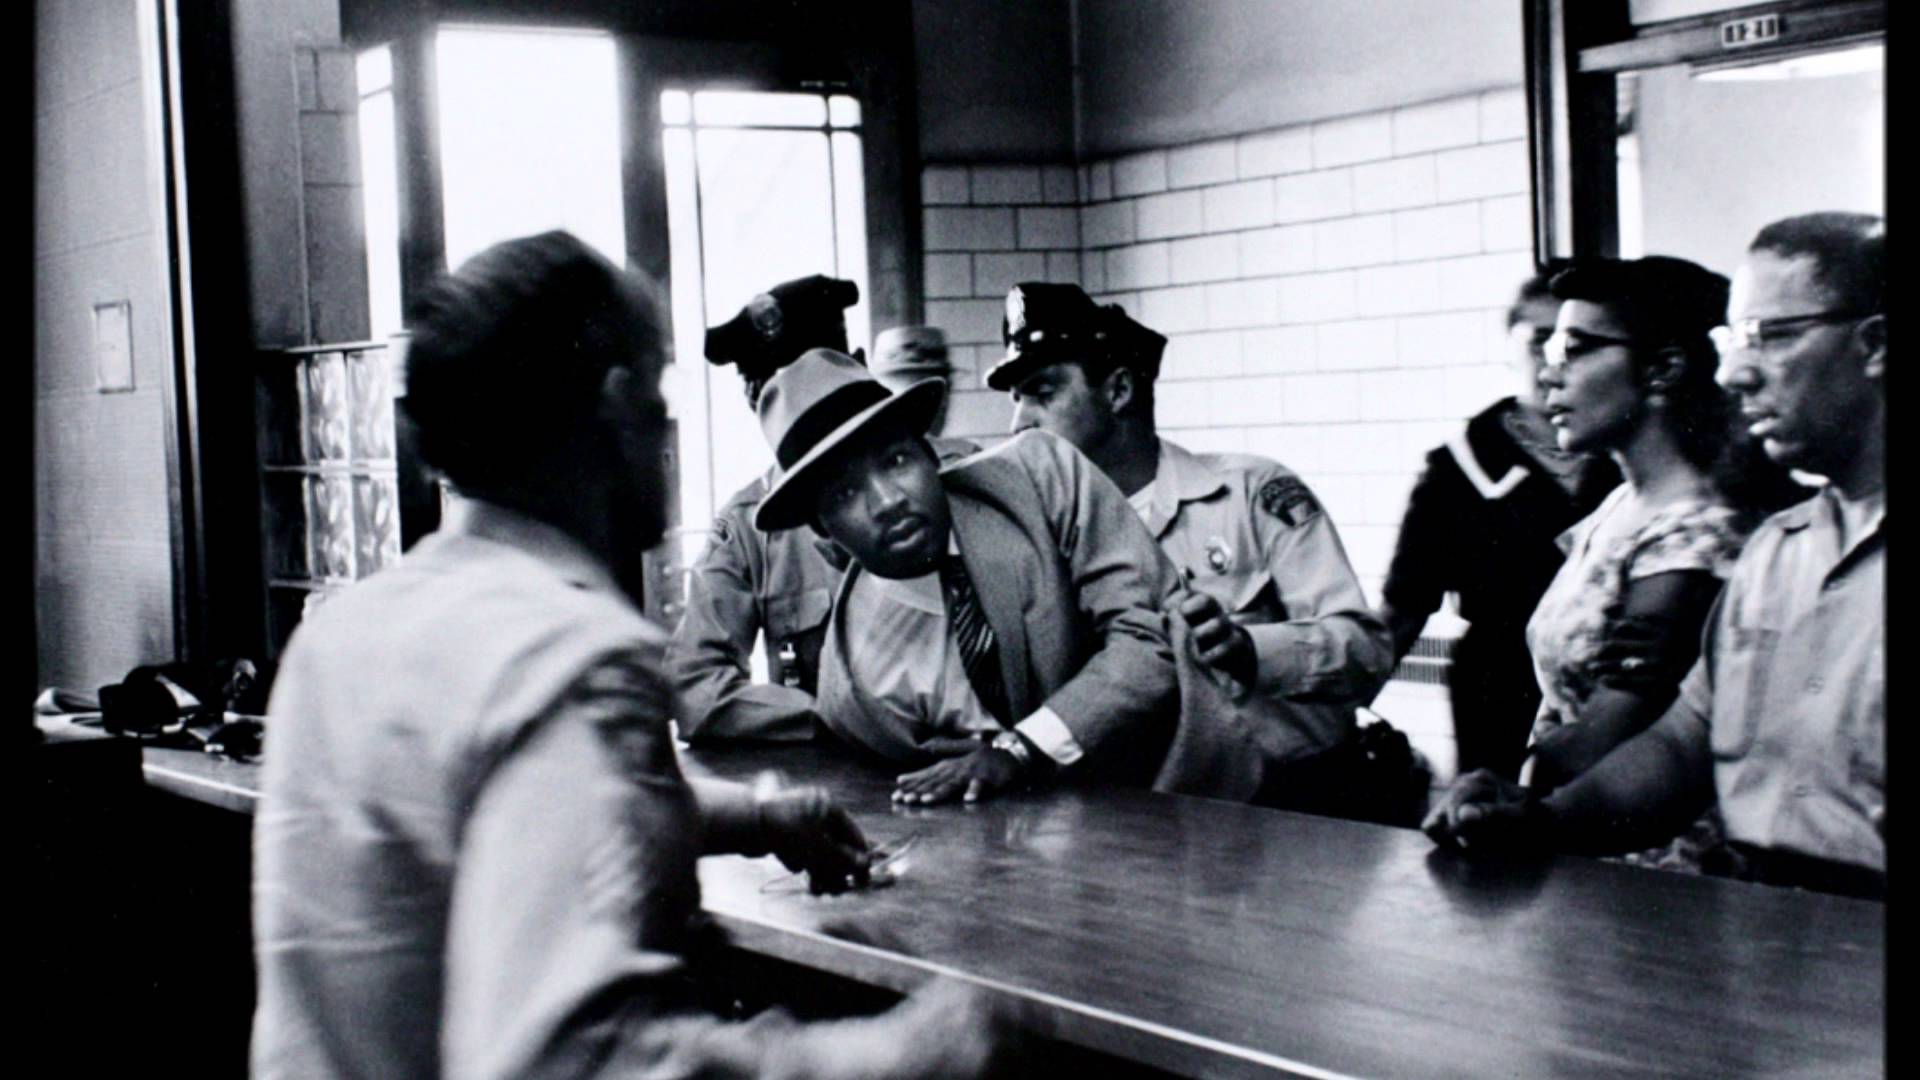 Martin Luther King Jr. Florida'daki Monson Motor Lodge otelinin siyahlara uyguladığı ayrımcılığı protesto ettiği için tutuklanırken, 18 Haziran 1964 